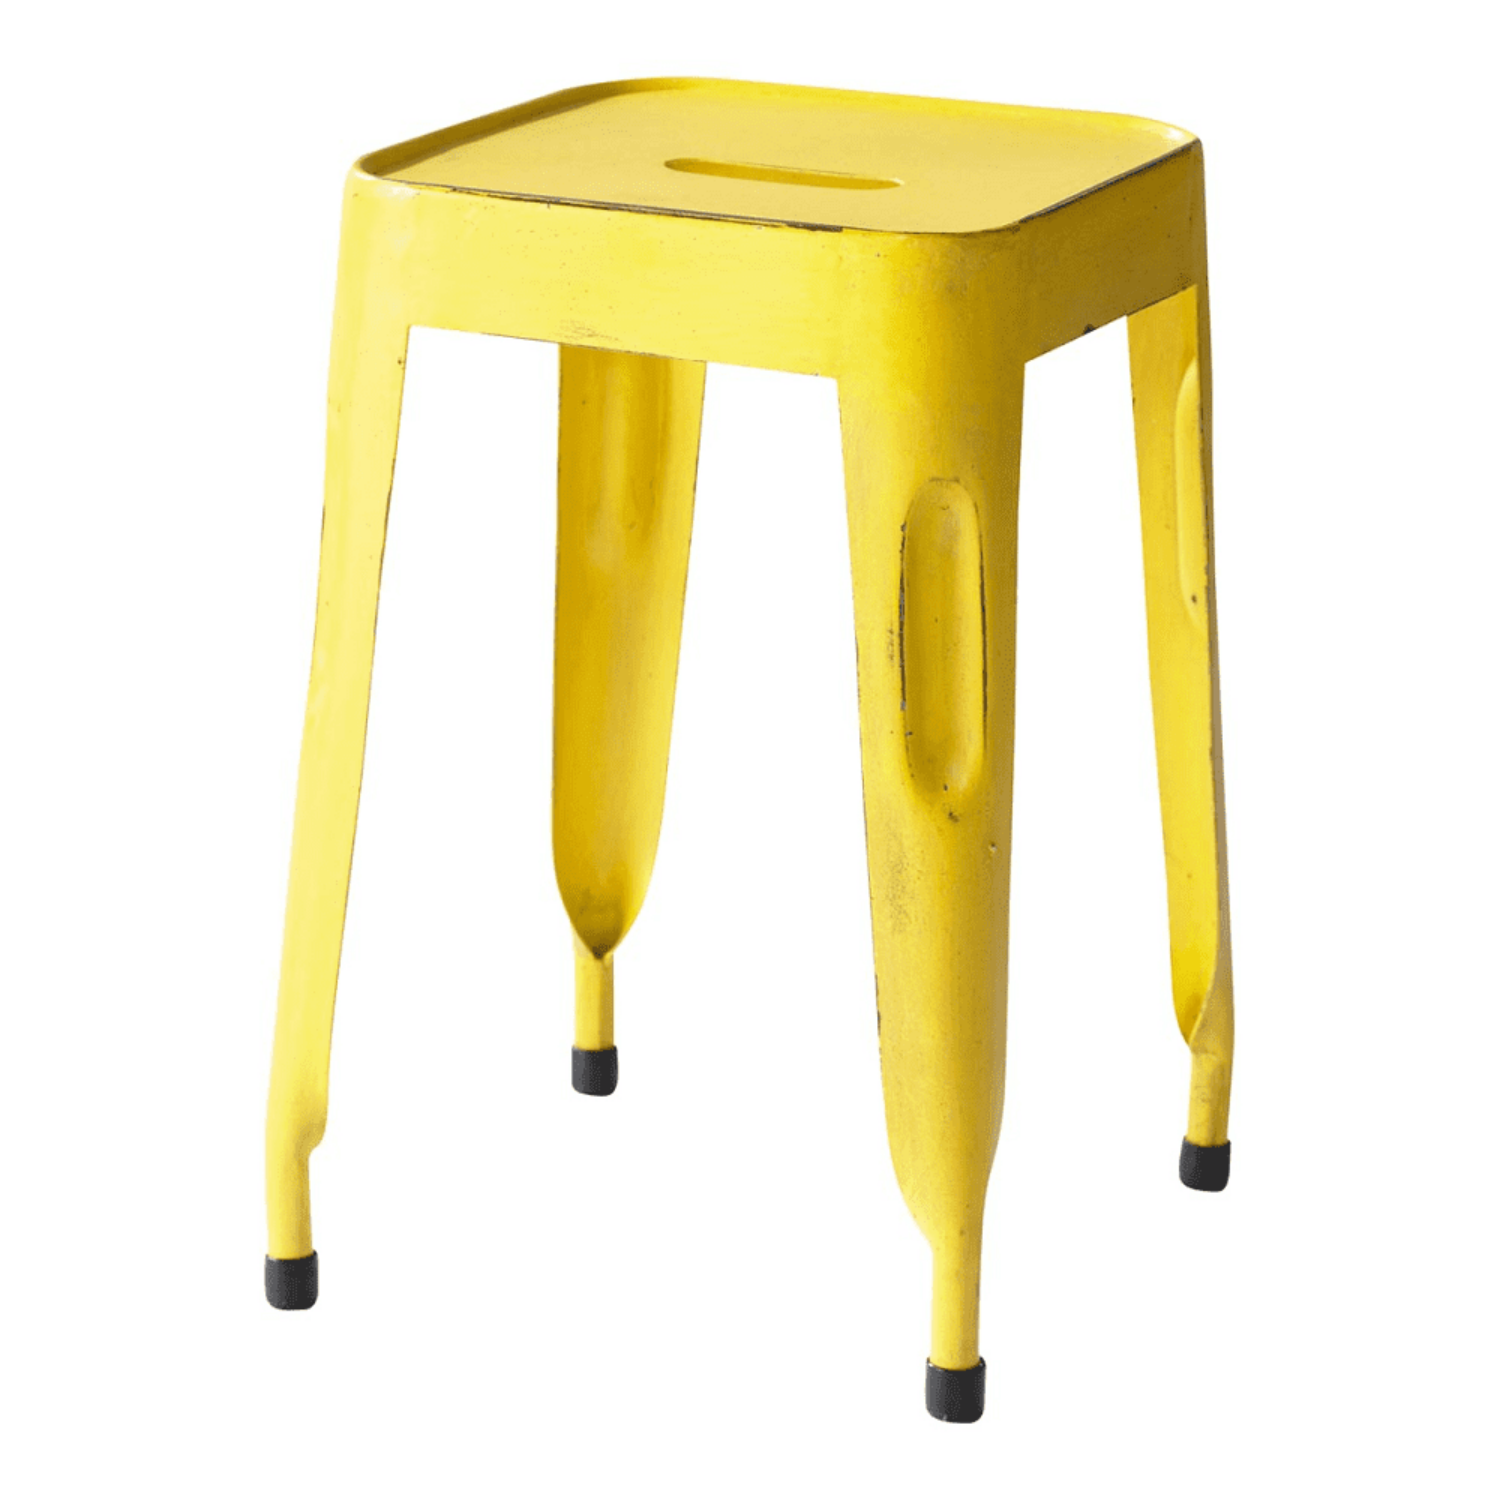 yellow metal stool